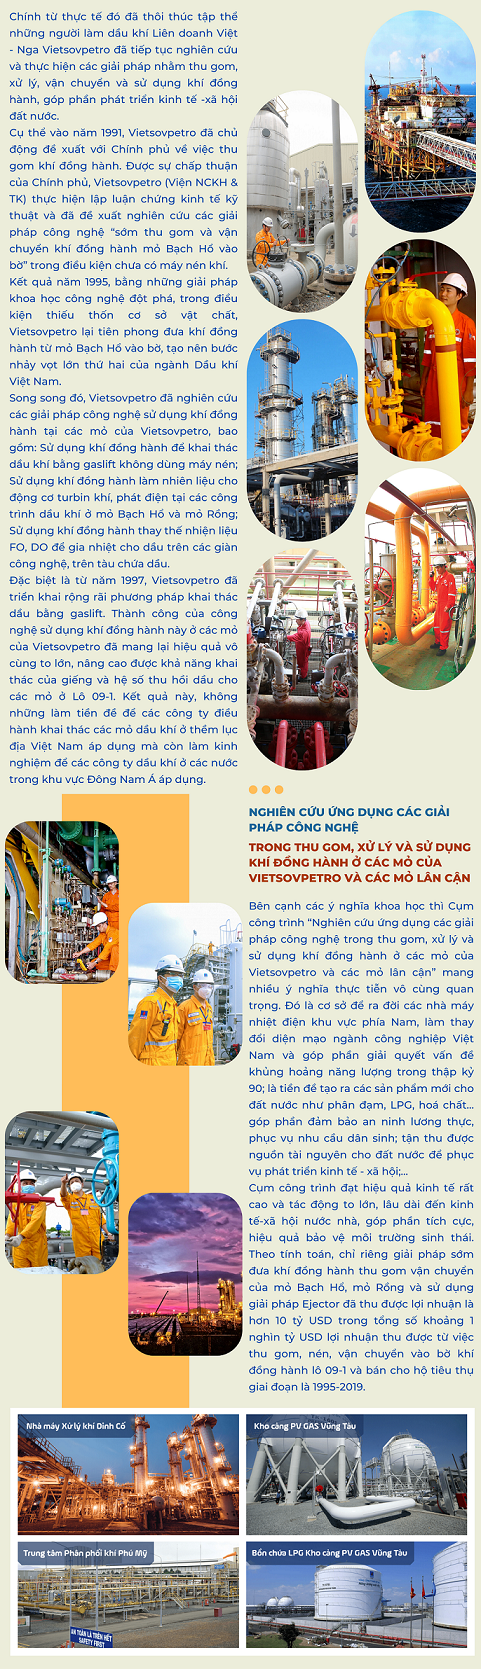 Tiền đề, nền tảng vững chắc của ngành công nghiệp Khí Việt Nam